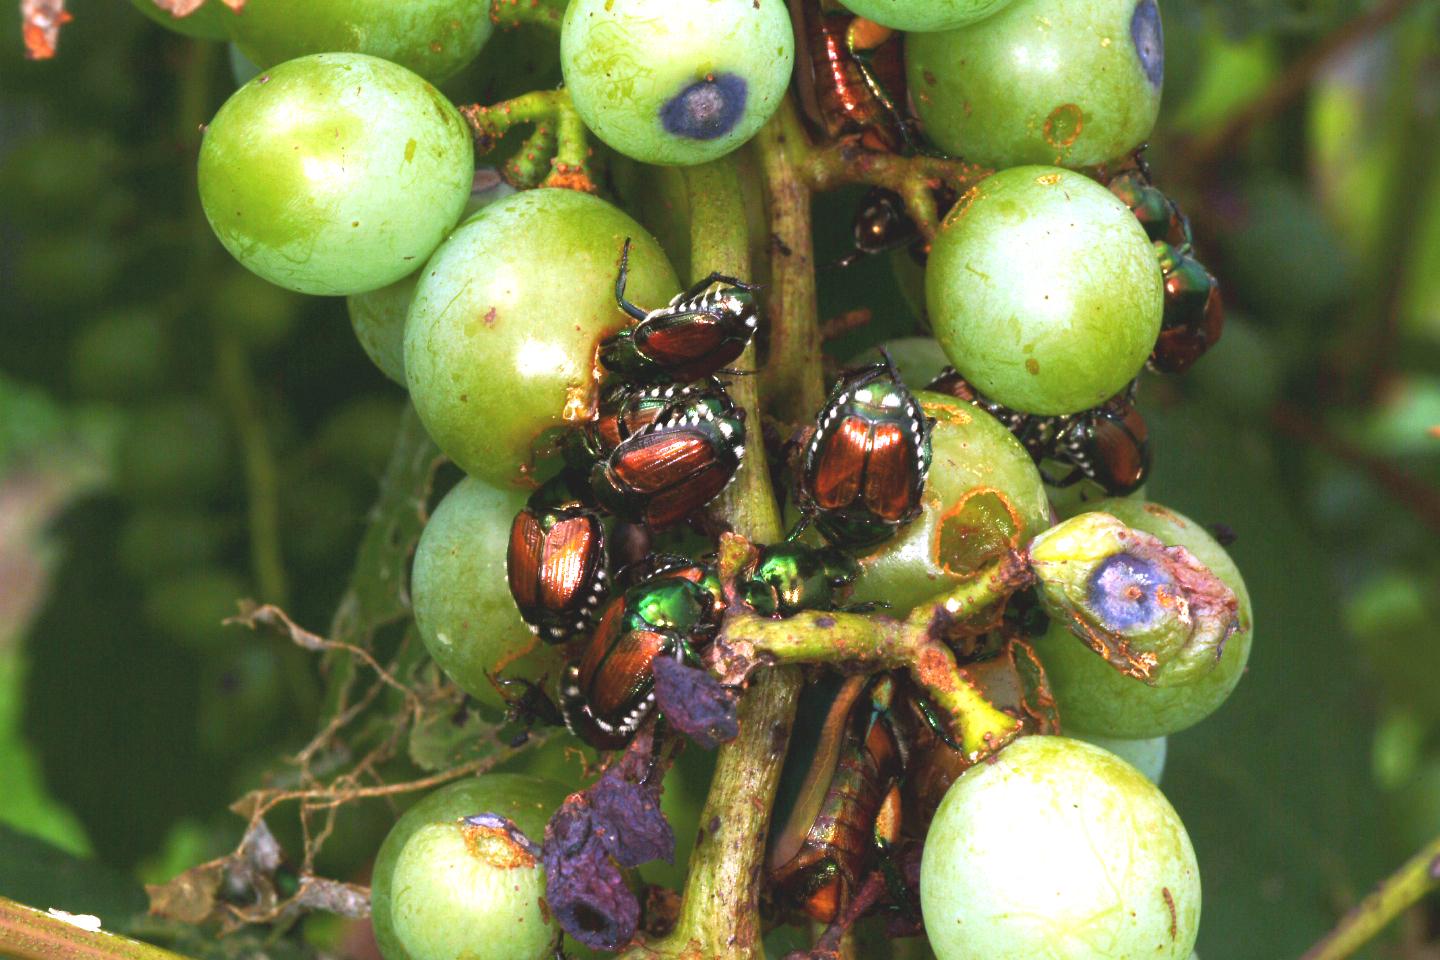 Japanese beetle damage to berries. 